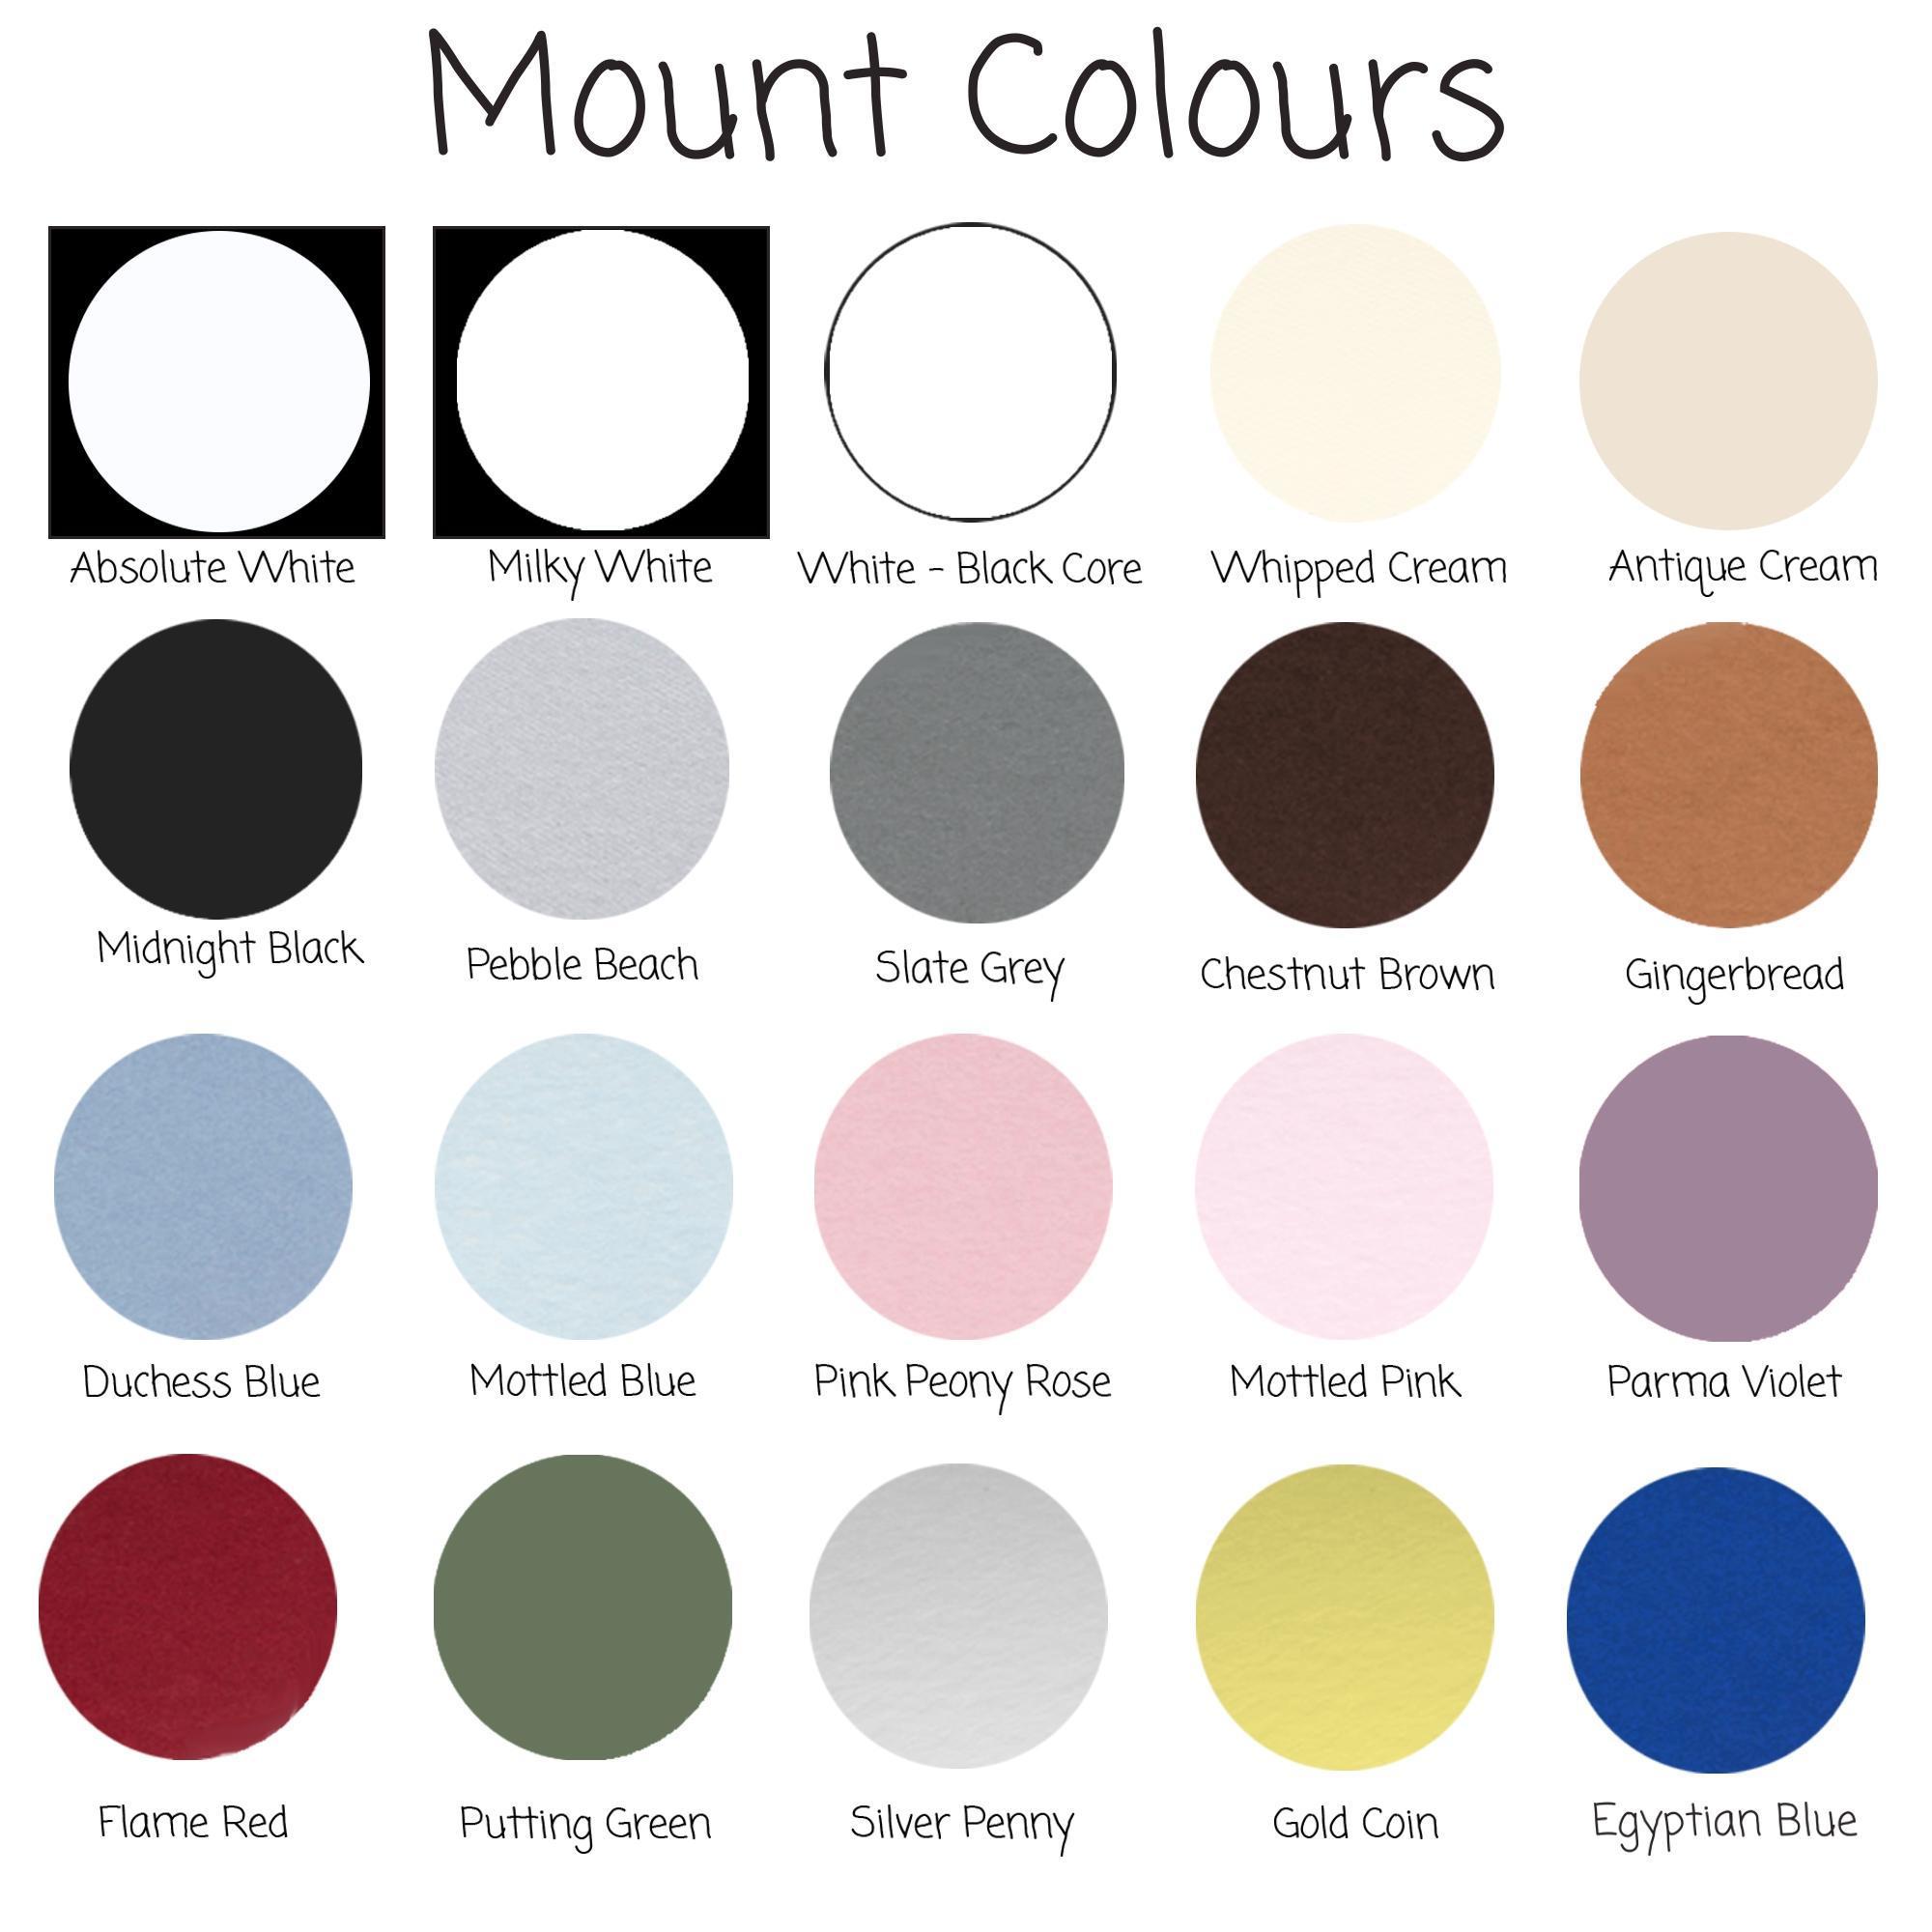 Mount Colours